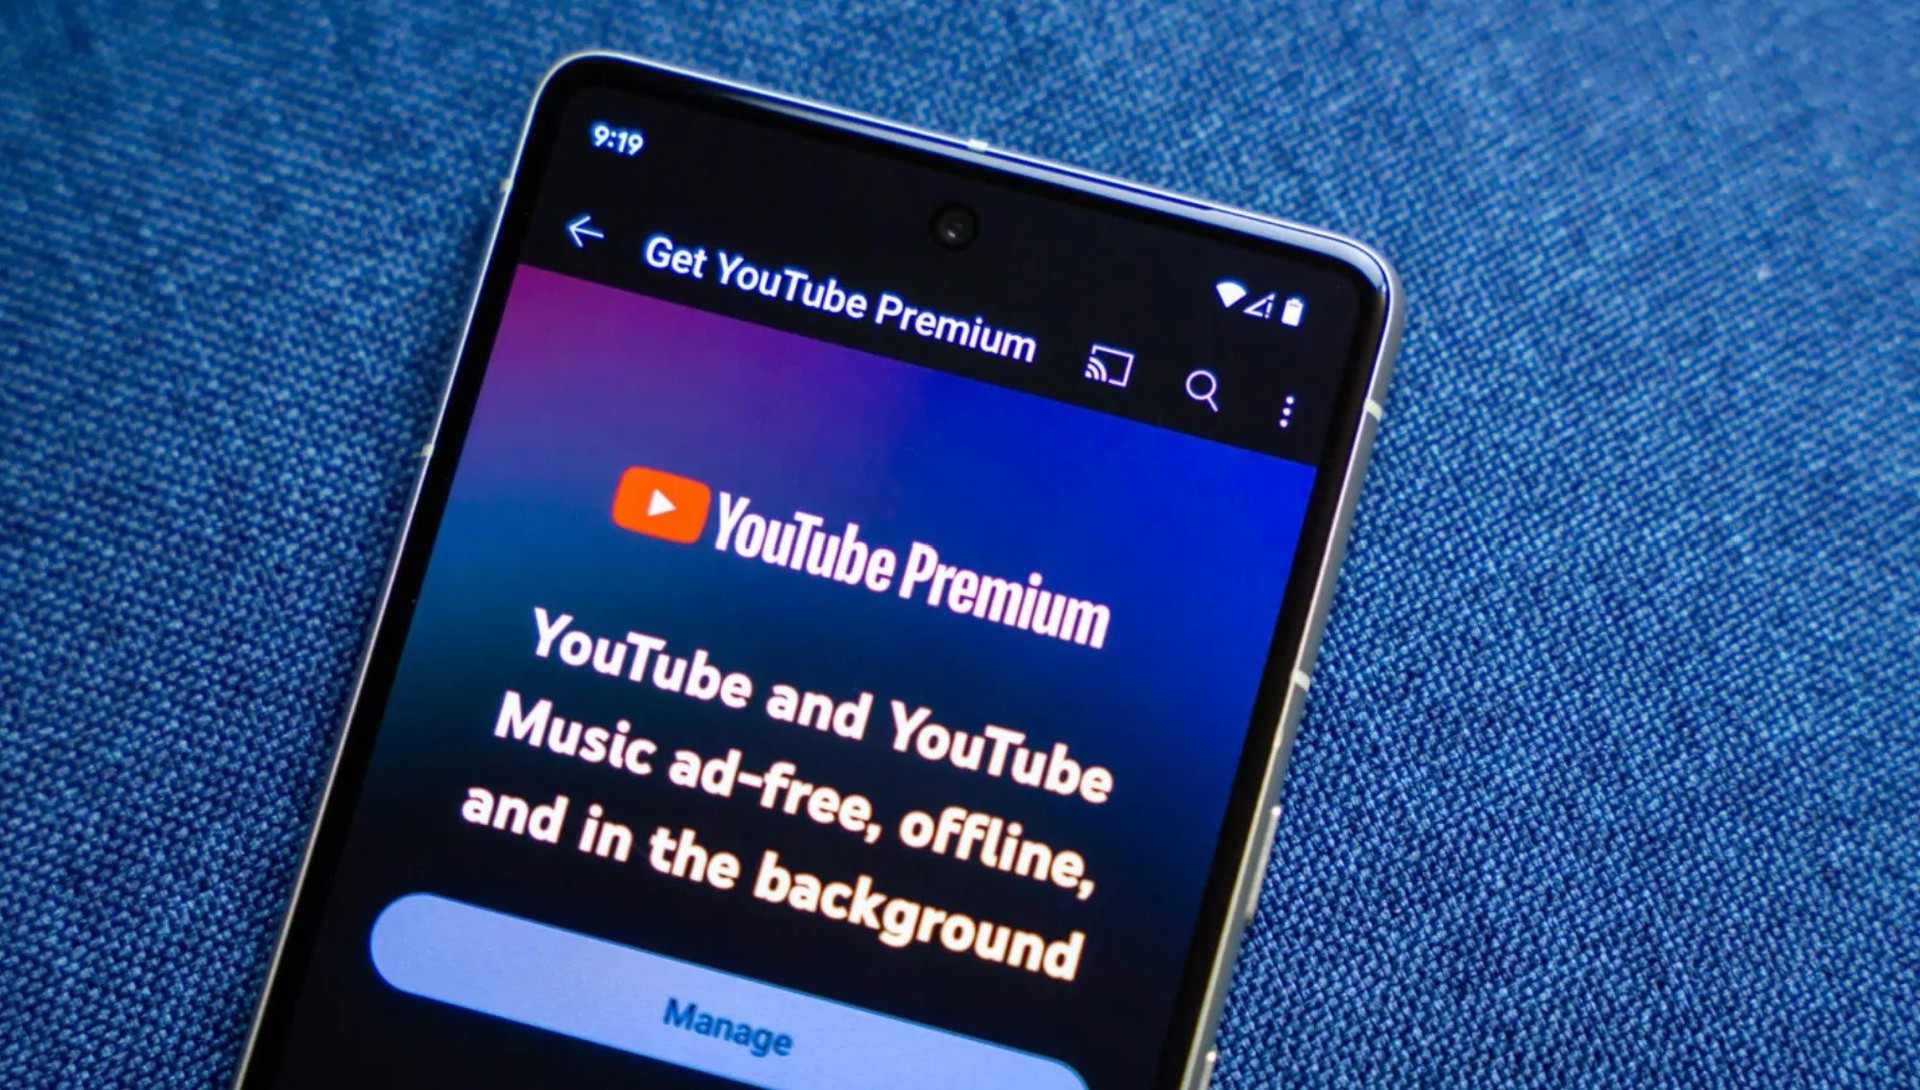 75% người dùng thà bỏ tiền mua chặn quảng cáo Premium còn hơn mua YouTube Premium, Google tung “chiêu mới” để trấn áp - Ảnh 1.